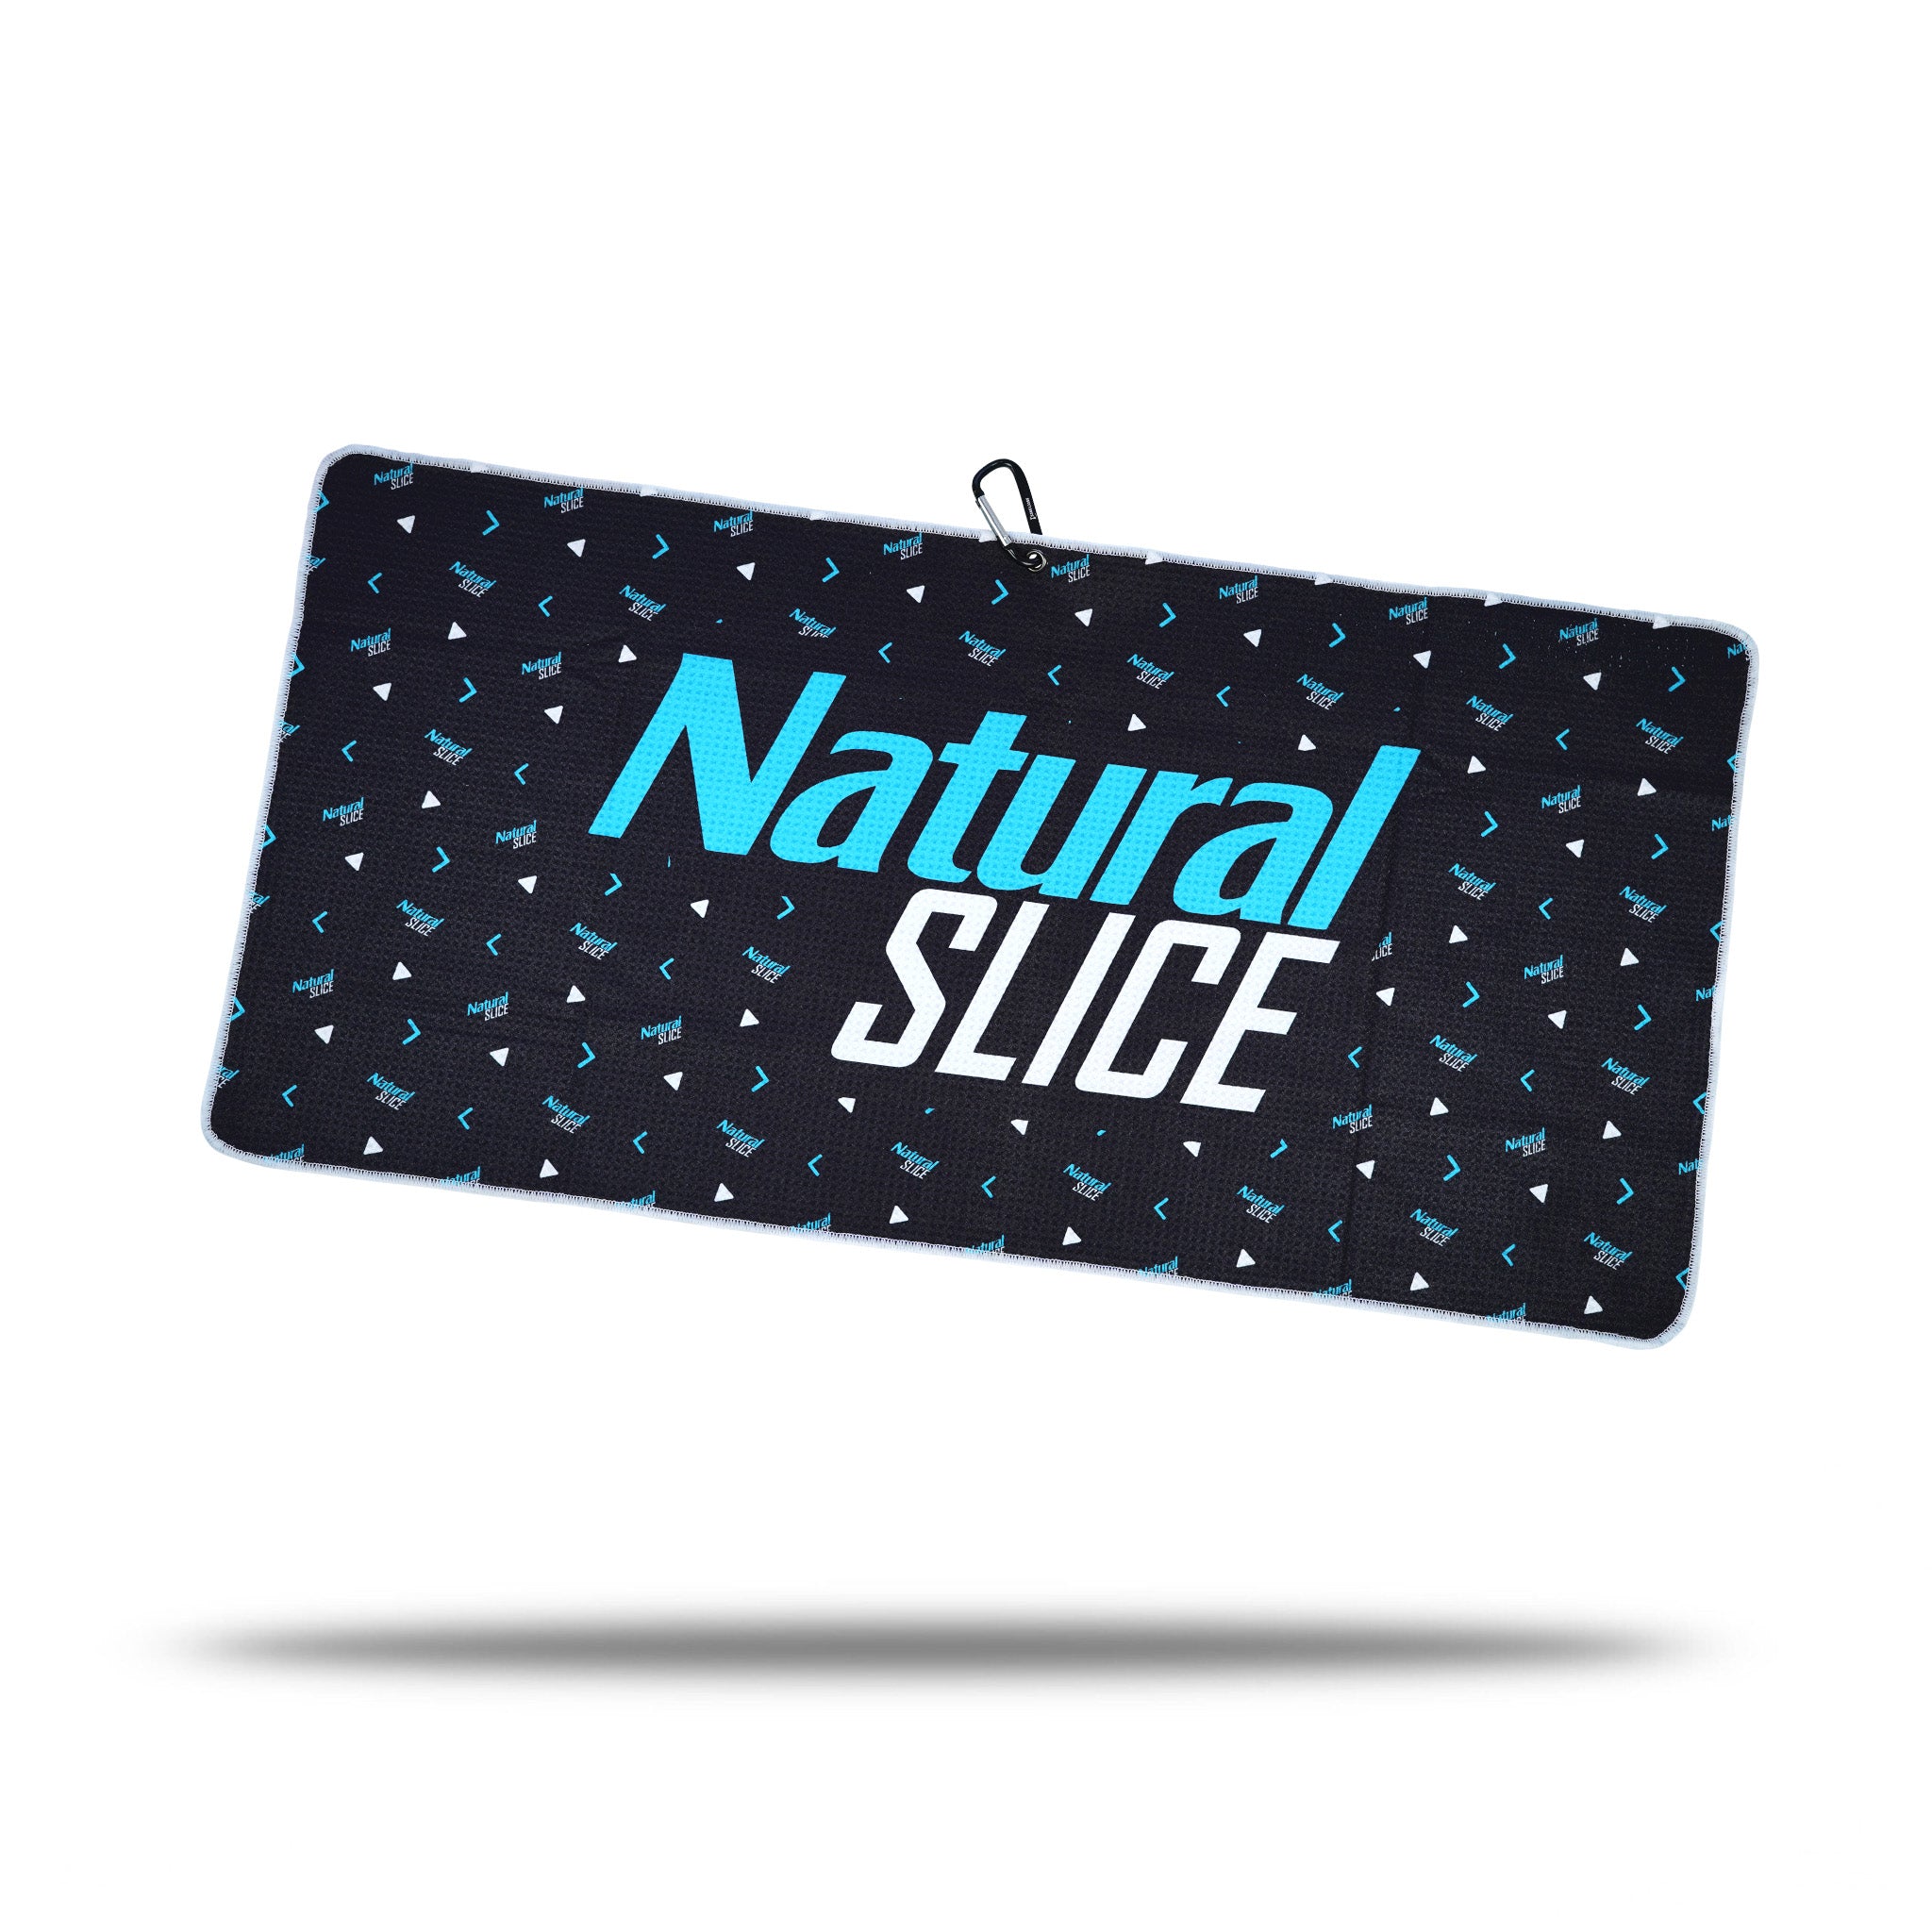 Natural Slice - Towel